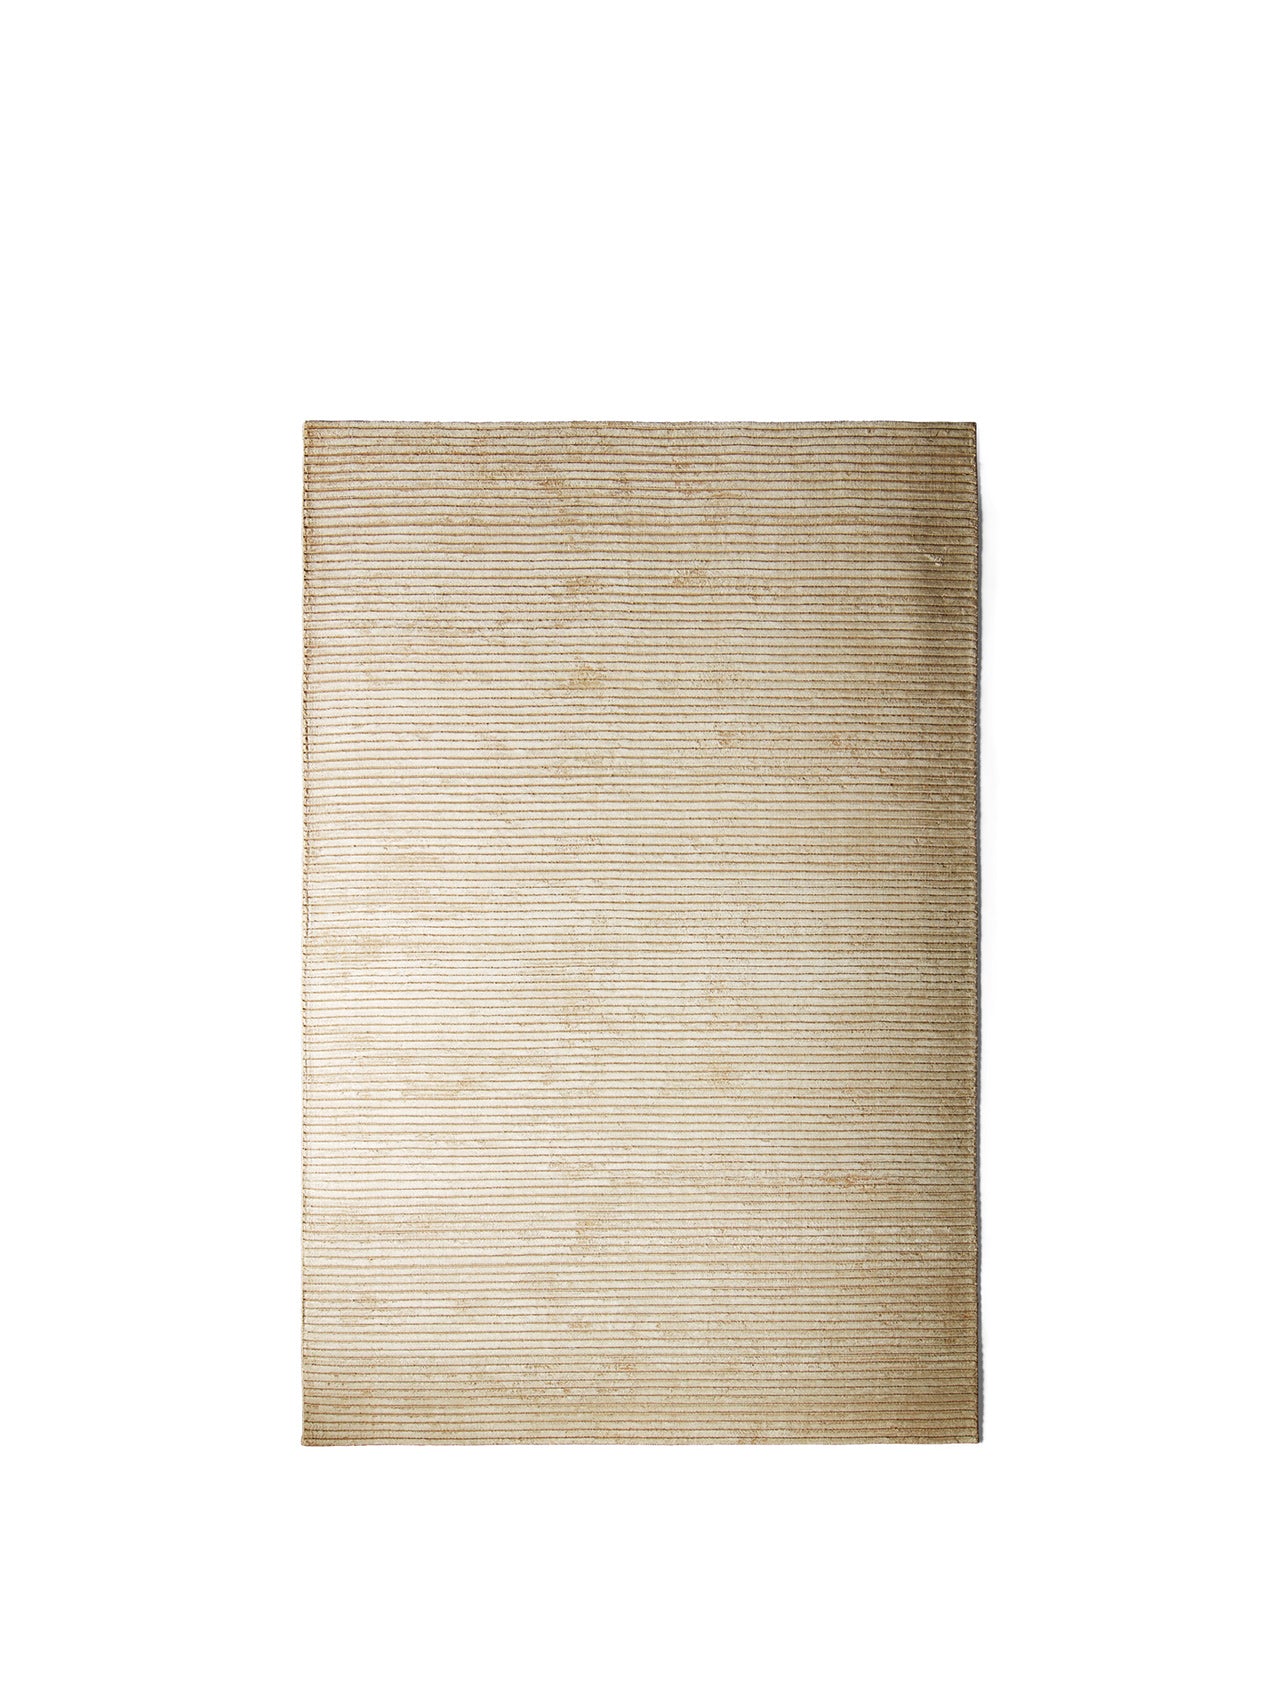 Menu - Houkime tapijt, 200x300, beige